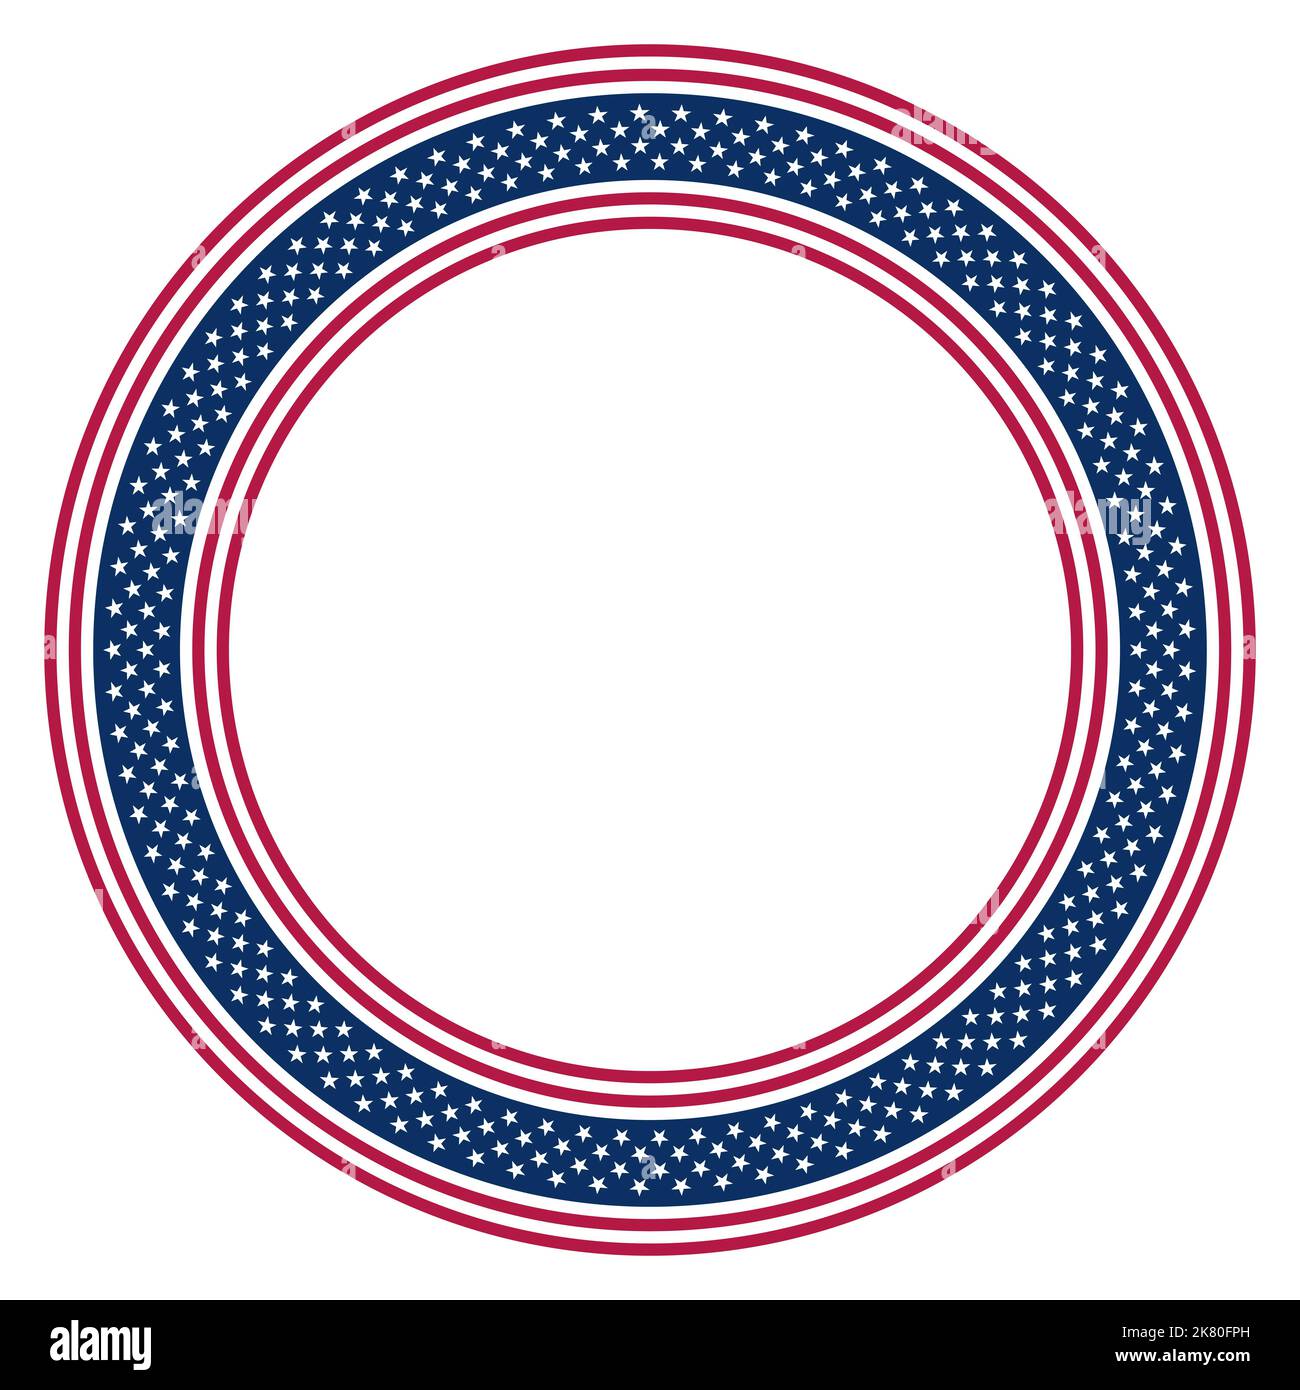 Motiv der Nationalflagge der Vereinigten Staaten, Kreisrahmen. Kreisförmige Bordüre aus Sternen- und Streifenmuster, basierend auf der amerikanischen Flagge. Stockfoto